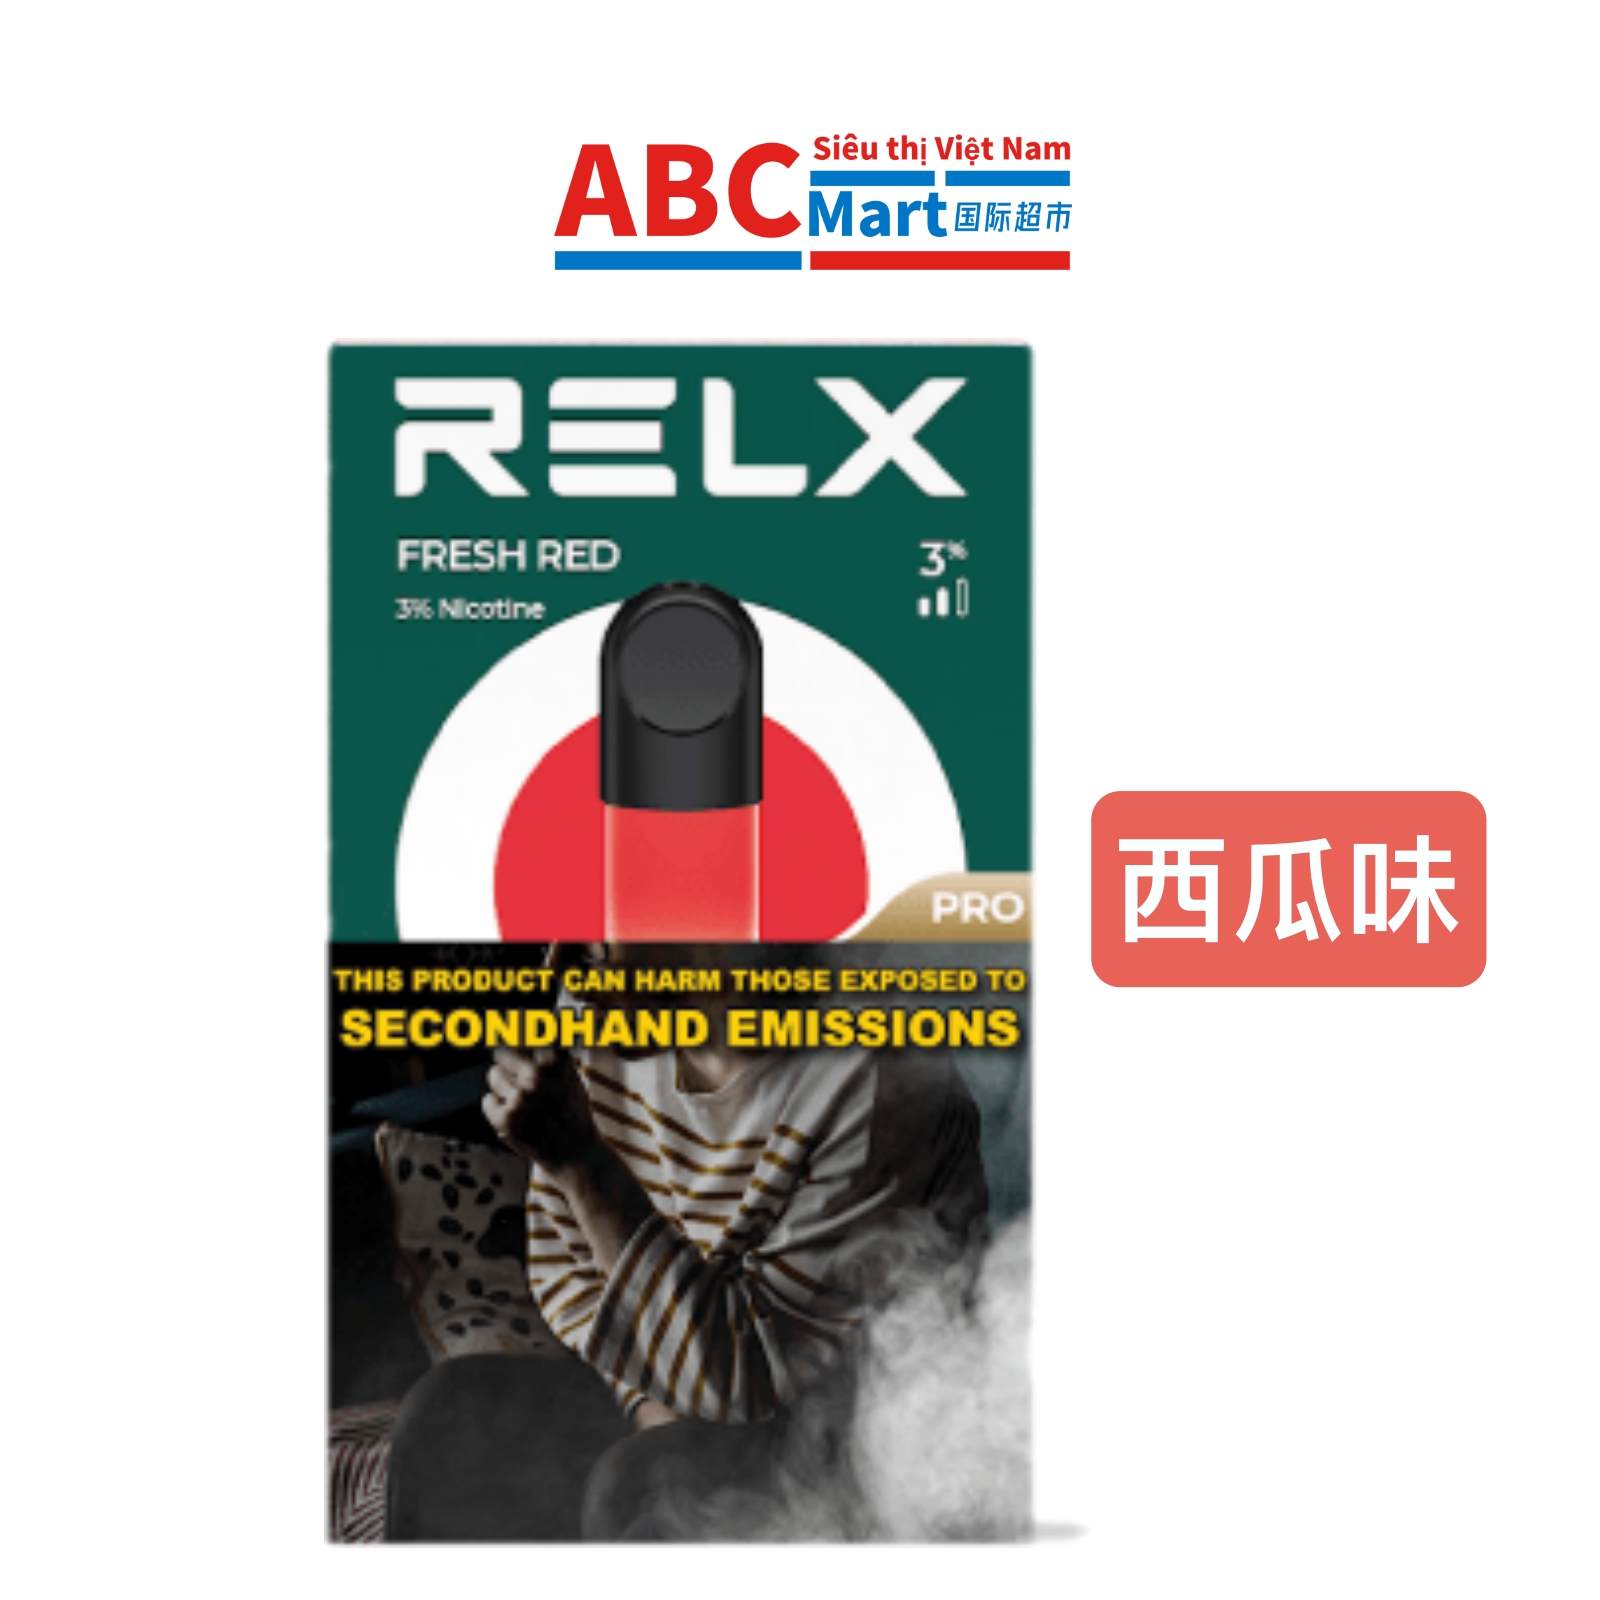 【中国-悦刻通用烟弹西瓜味1盒】relx电子烟4-5代fresh red -ABCMart 国际超市